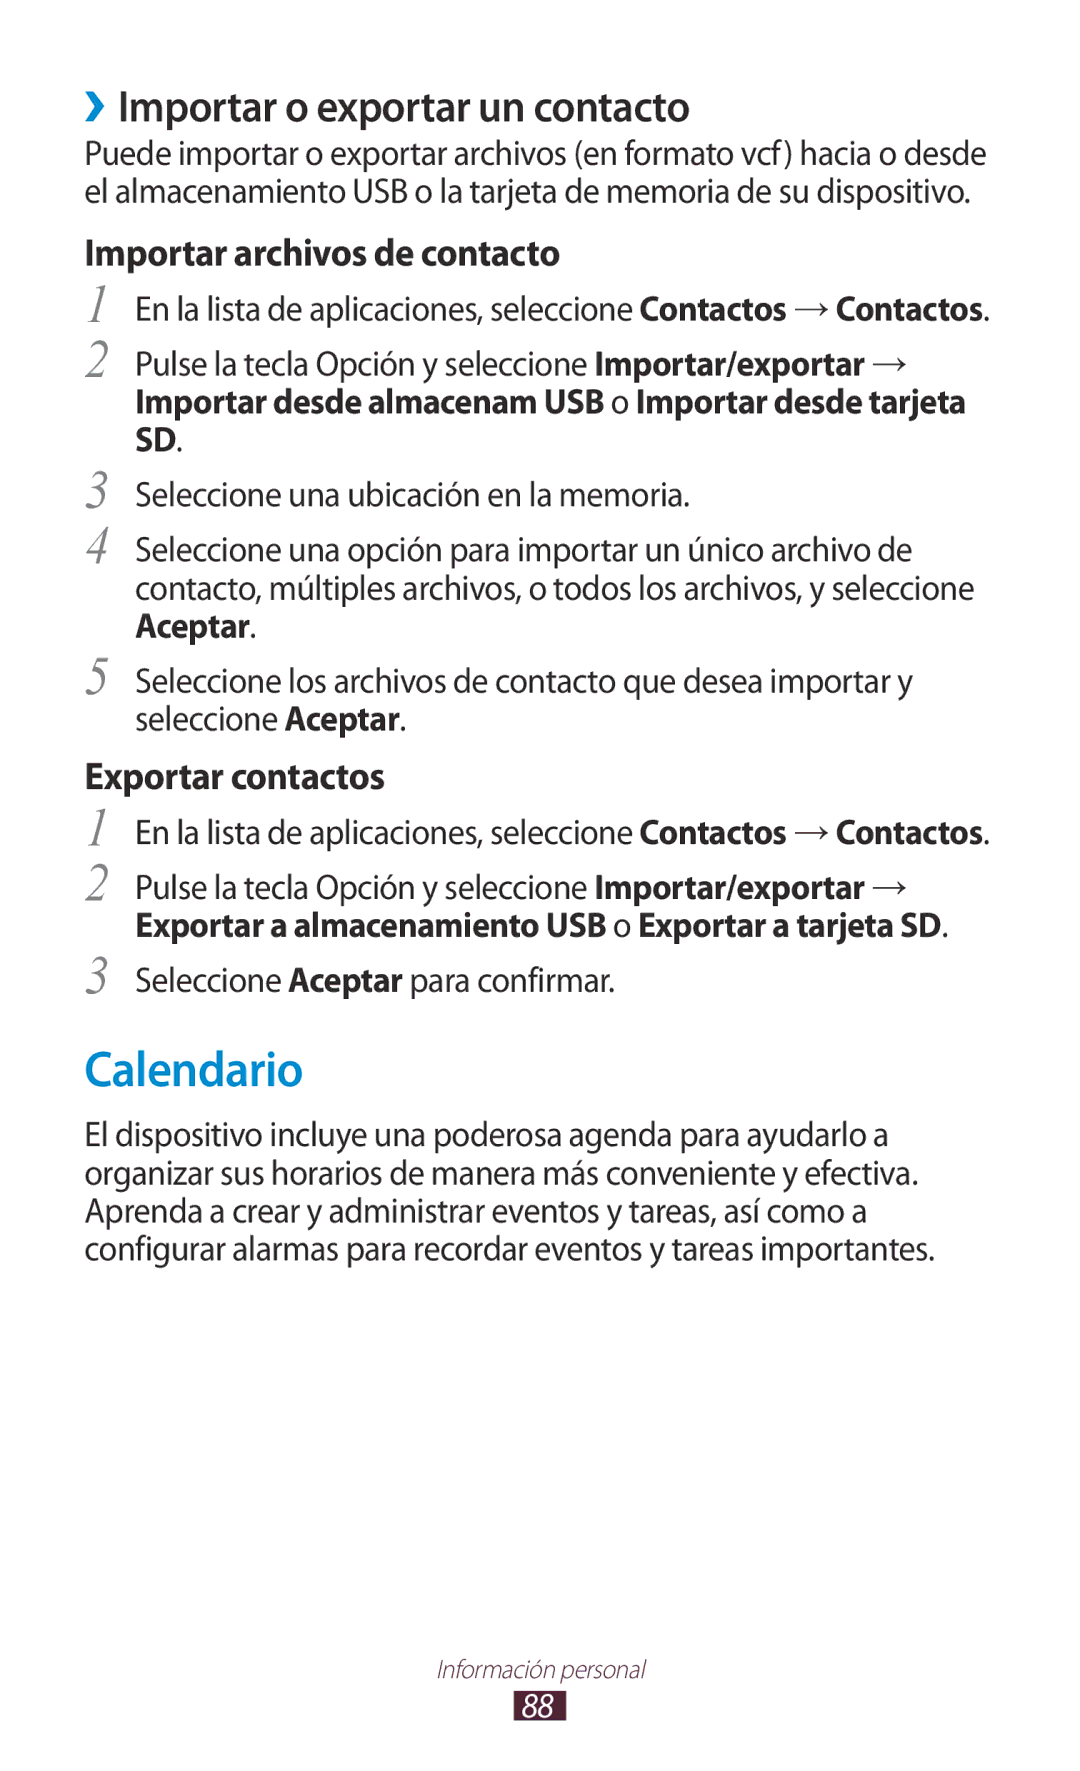 Samsung GT-S7560UWAXEC Calendario, ››Importar o exportar un contacto, Importar archivos de contacto, Exportar contactos 